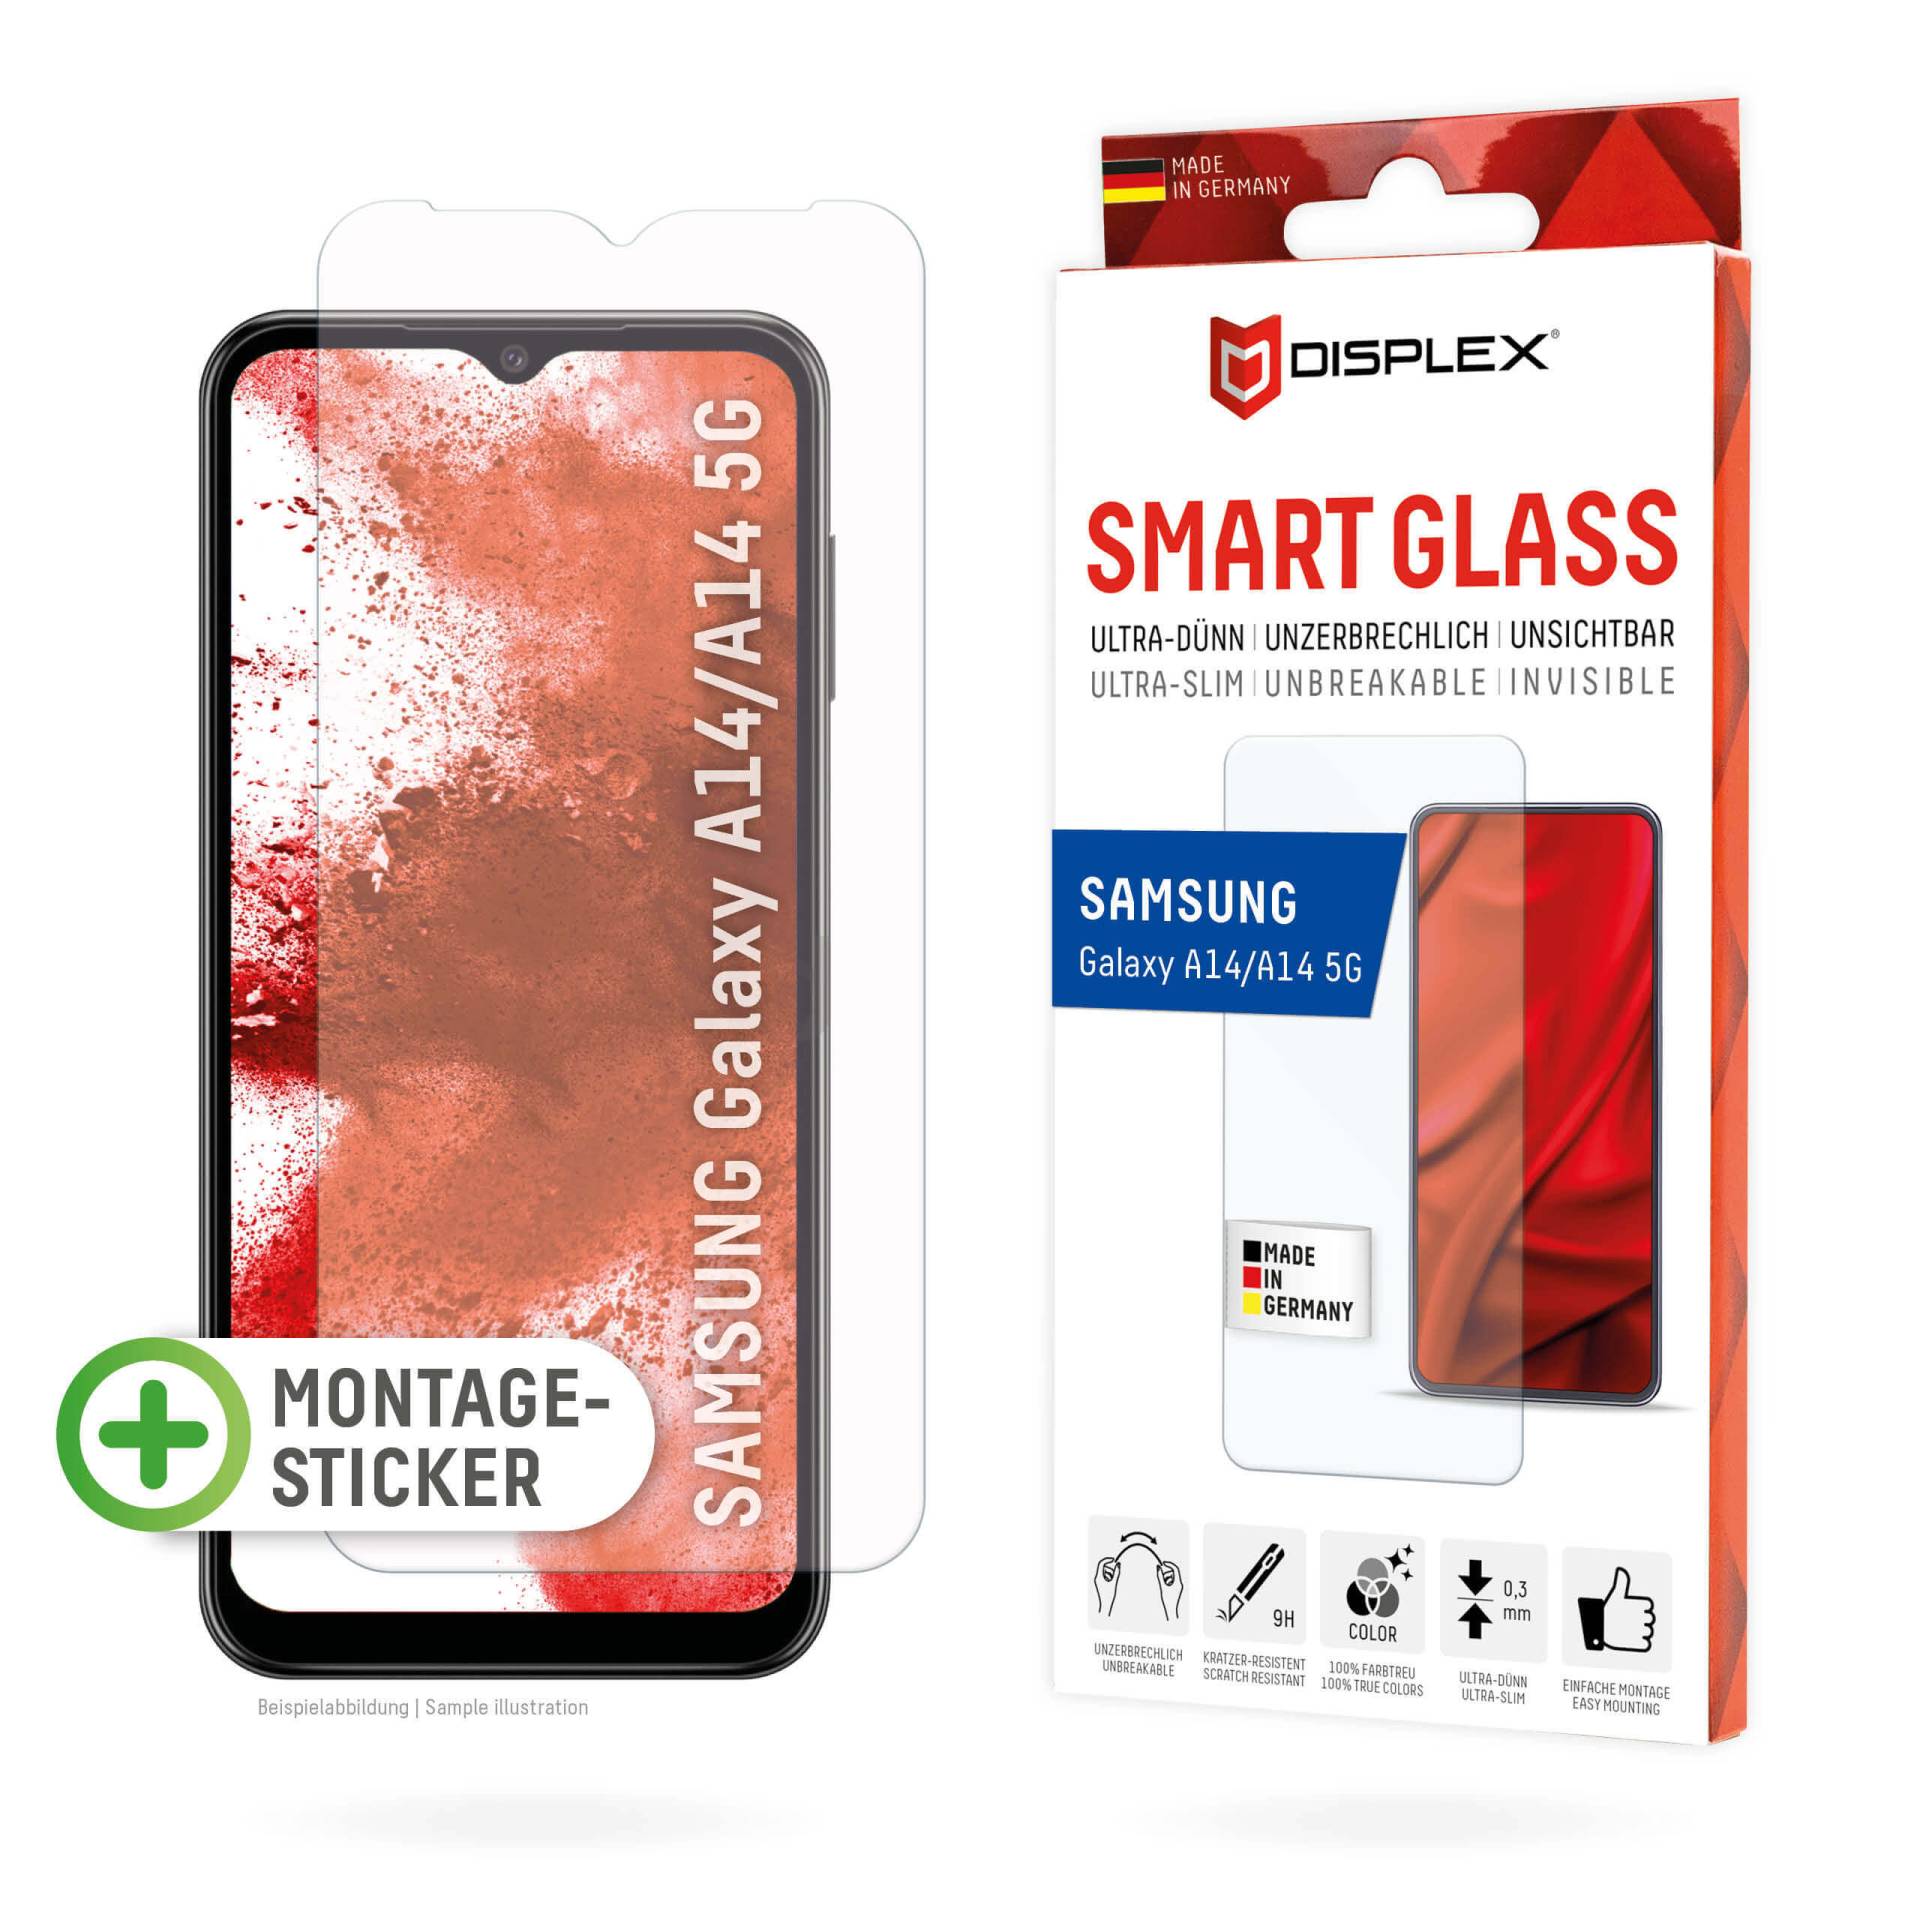 DISPLEX Smart Glass (9H) für Samsung Galaxy A14 5G Montagesticker, unzerbrechlich, ultra-dünn, unsichtbar von Displex